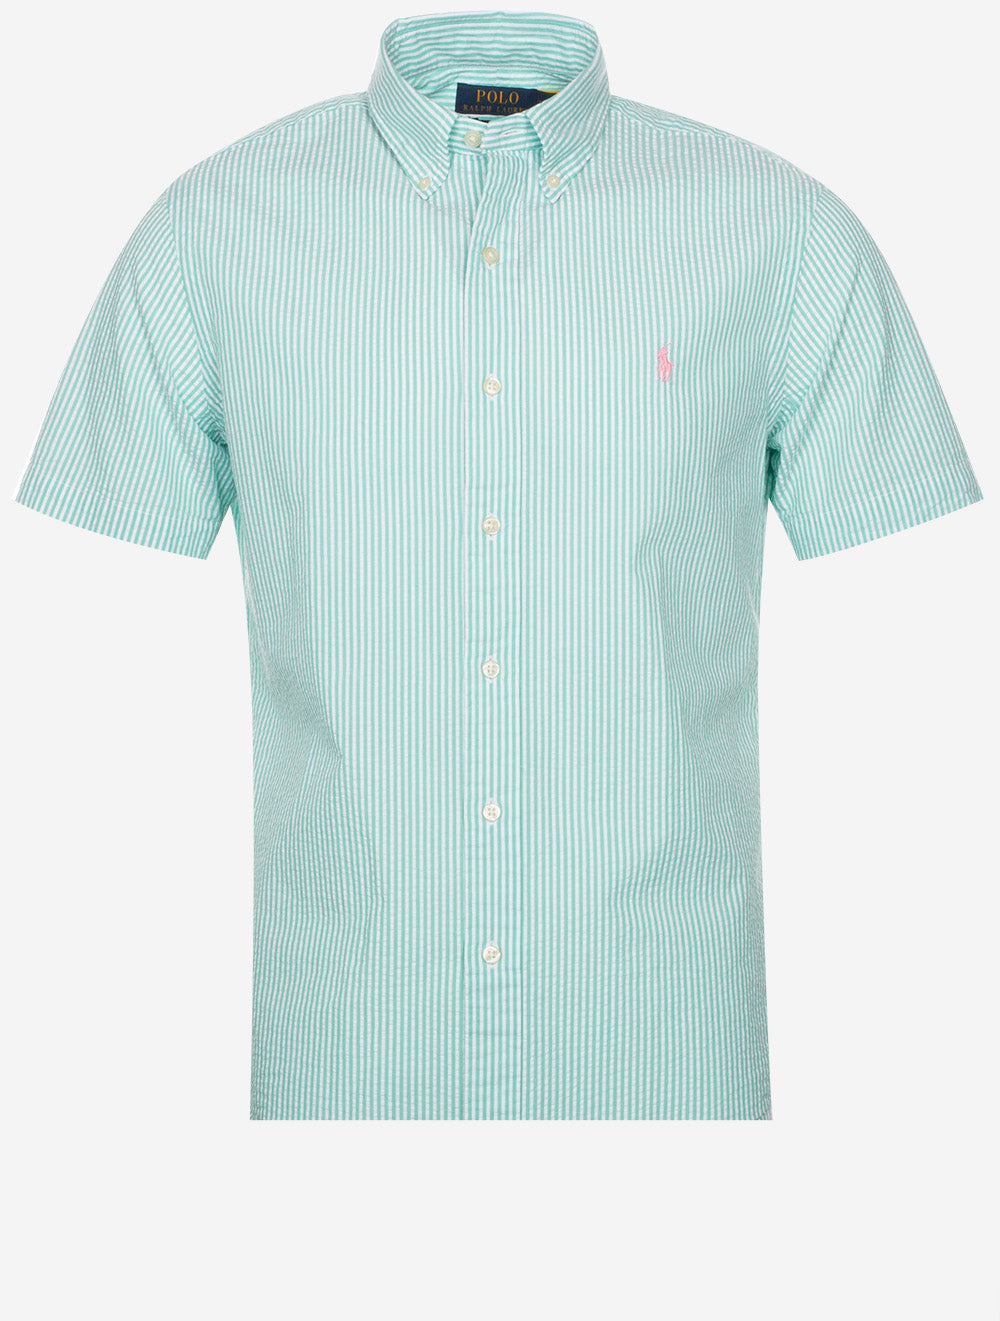 Seeksucker Shirt Sleeve Stripe Shirt Green